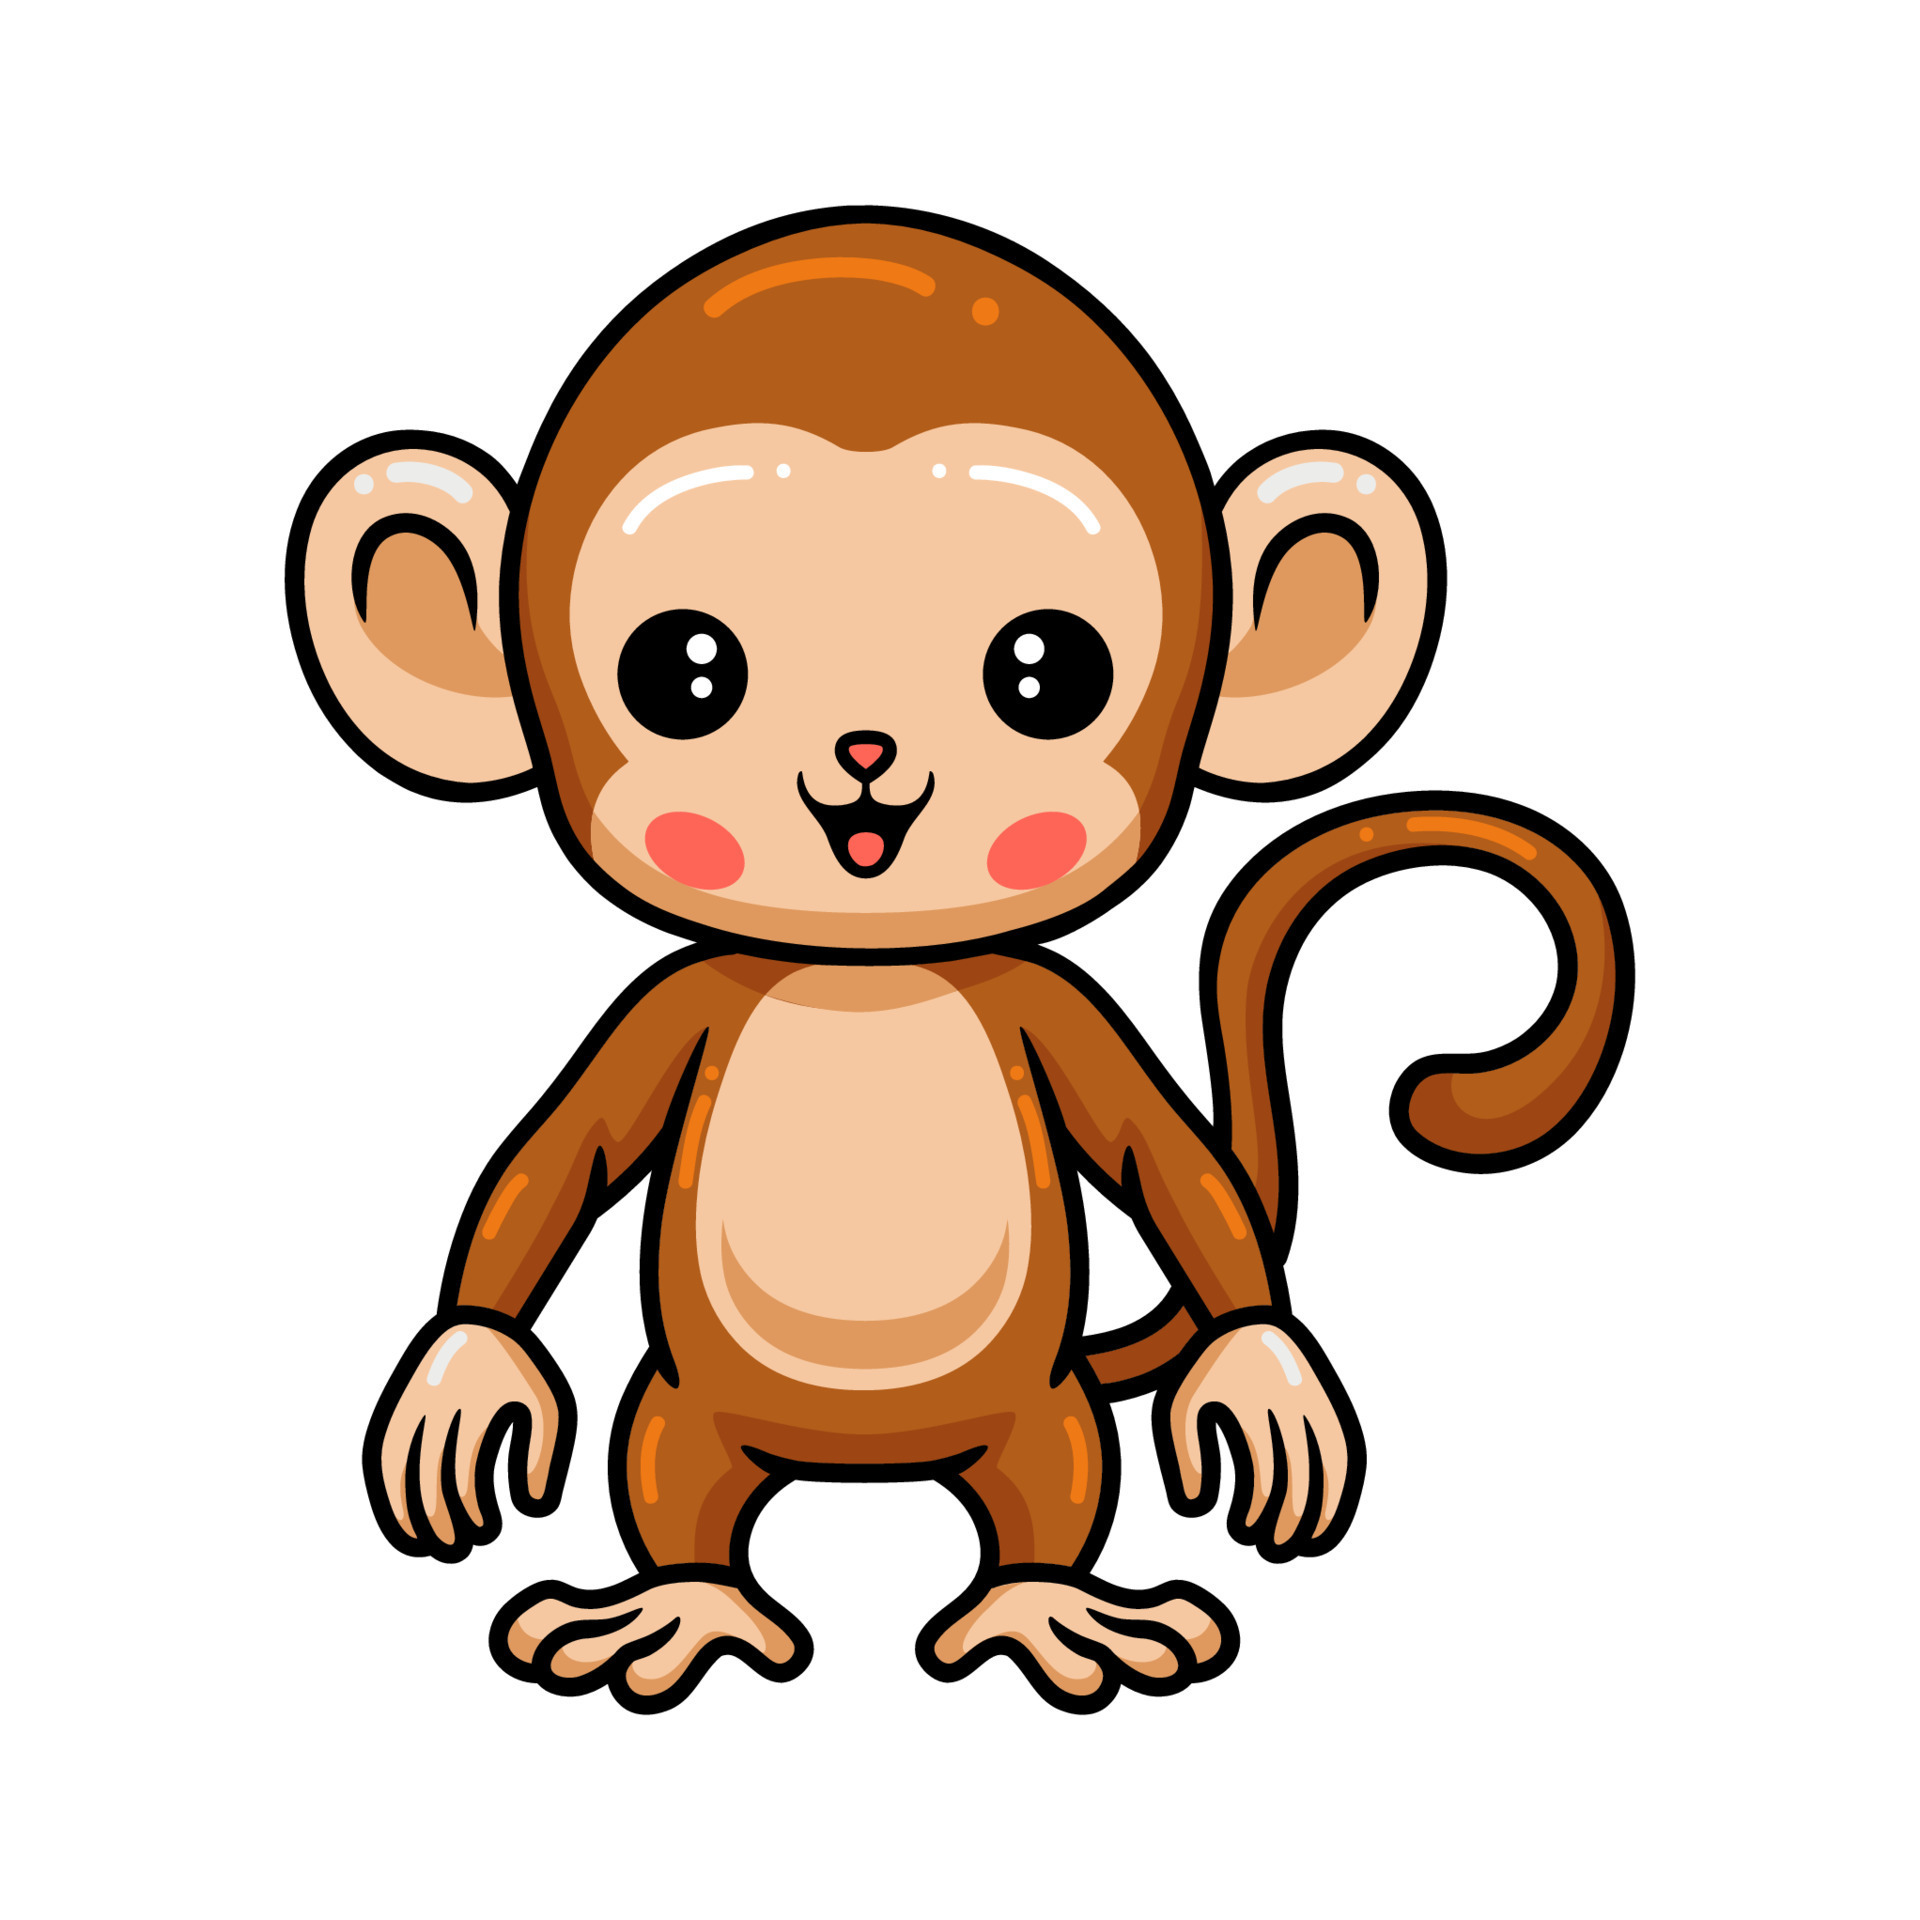 Cute baby monkey cartoon standing 9876893 Vector Art at Vecteezy